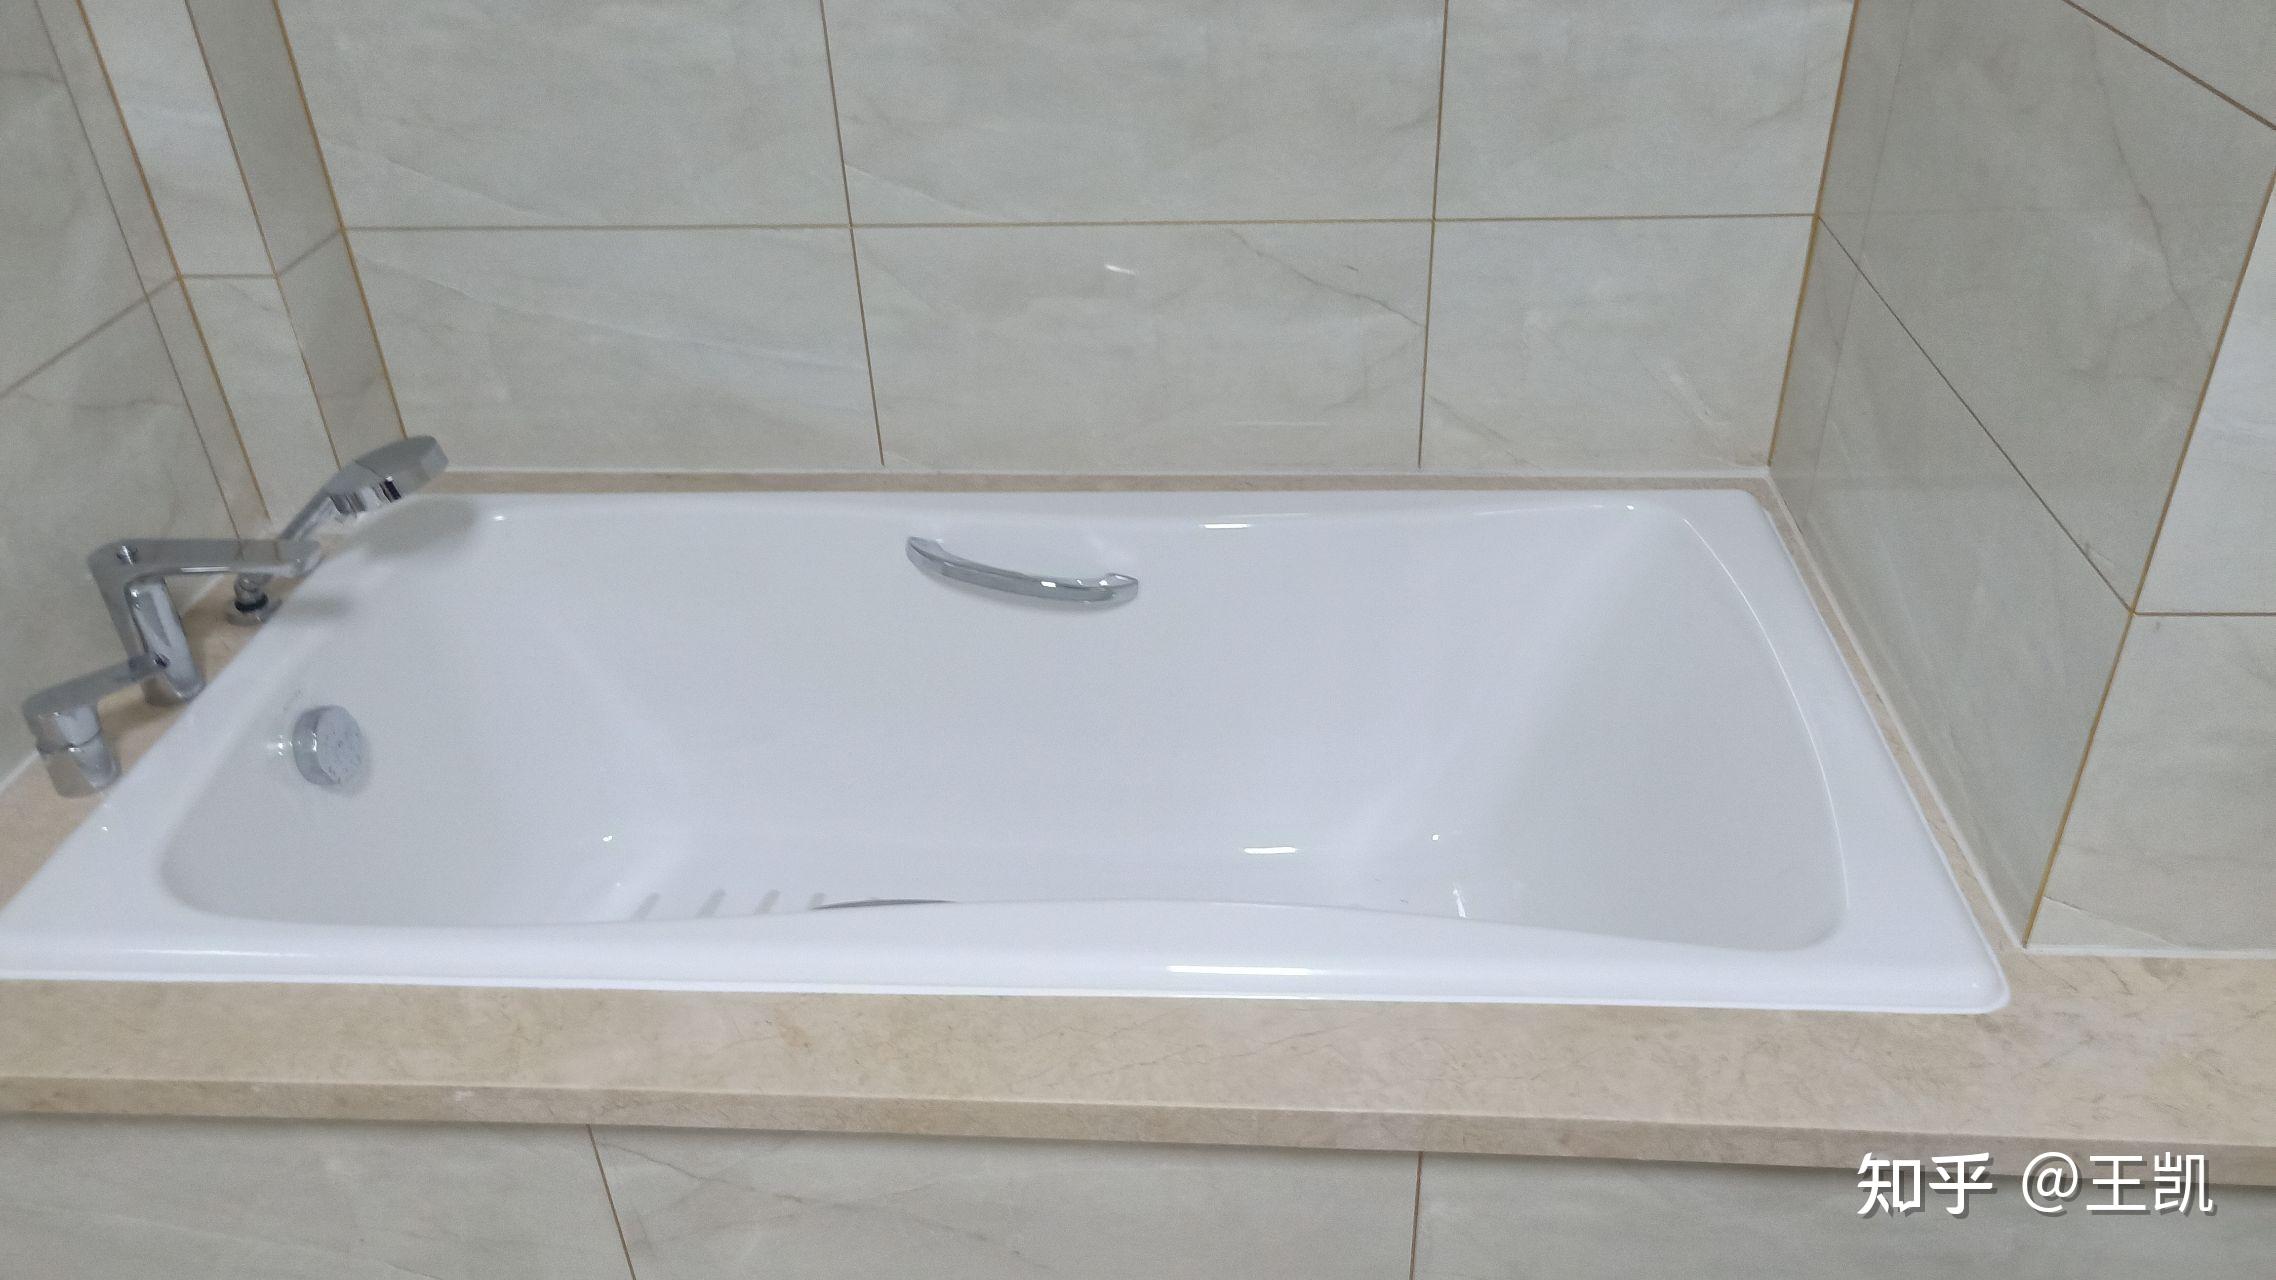 嵌入式浴缸怎么安装 威海装修师傅教你安装技巧 - 本地资讯 - 装一网